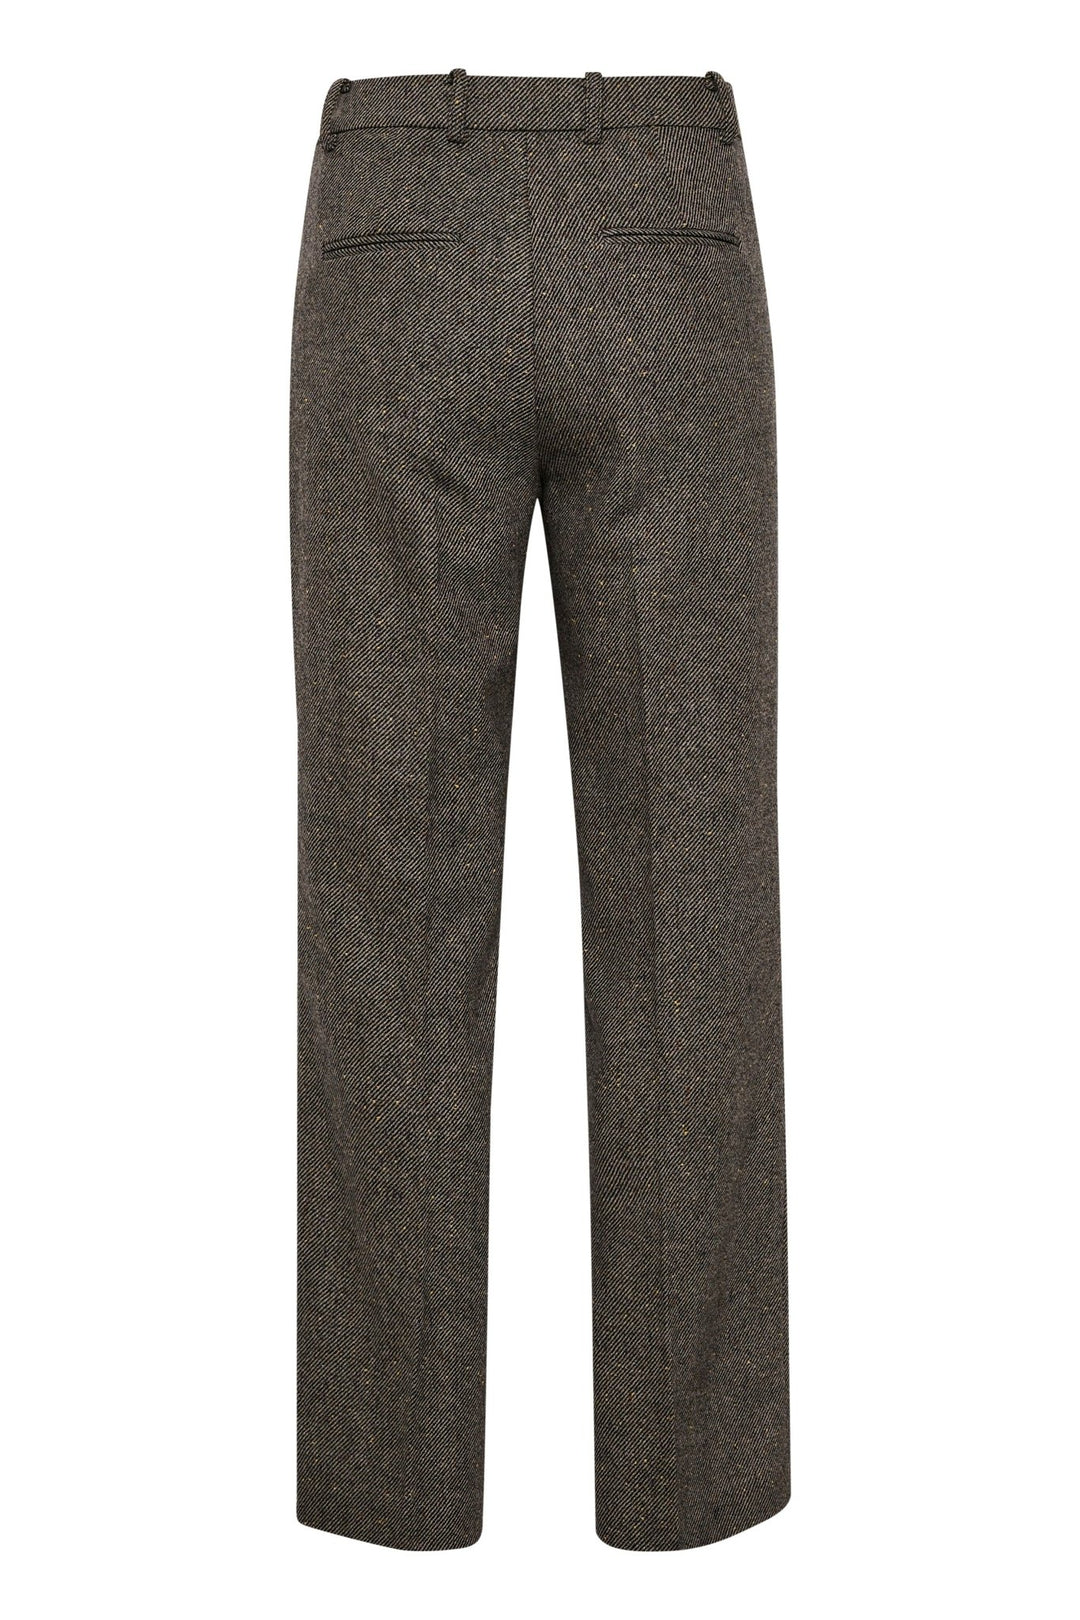 Connipw Pants Black Tweed | Bukser | Smuk - Dameklær på nett